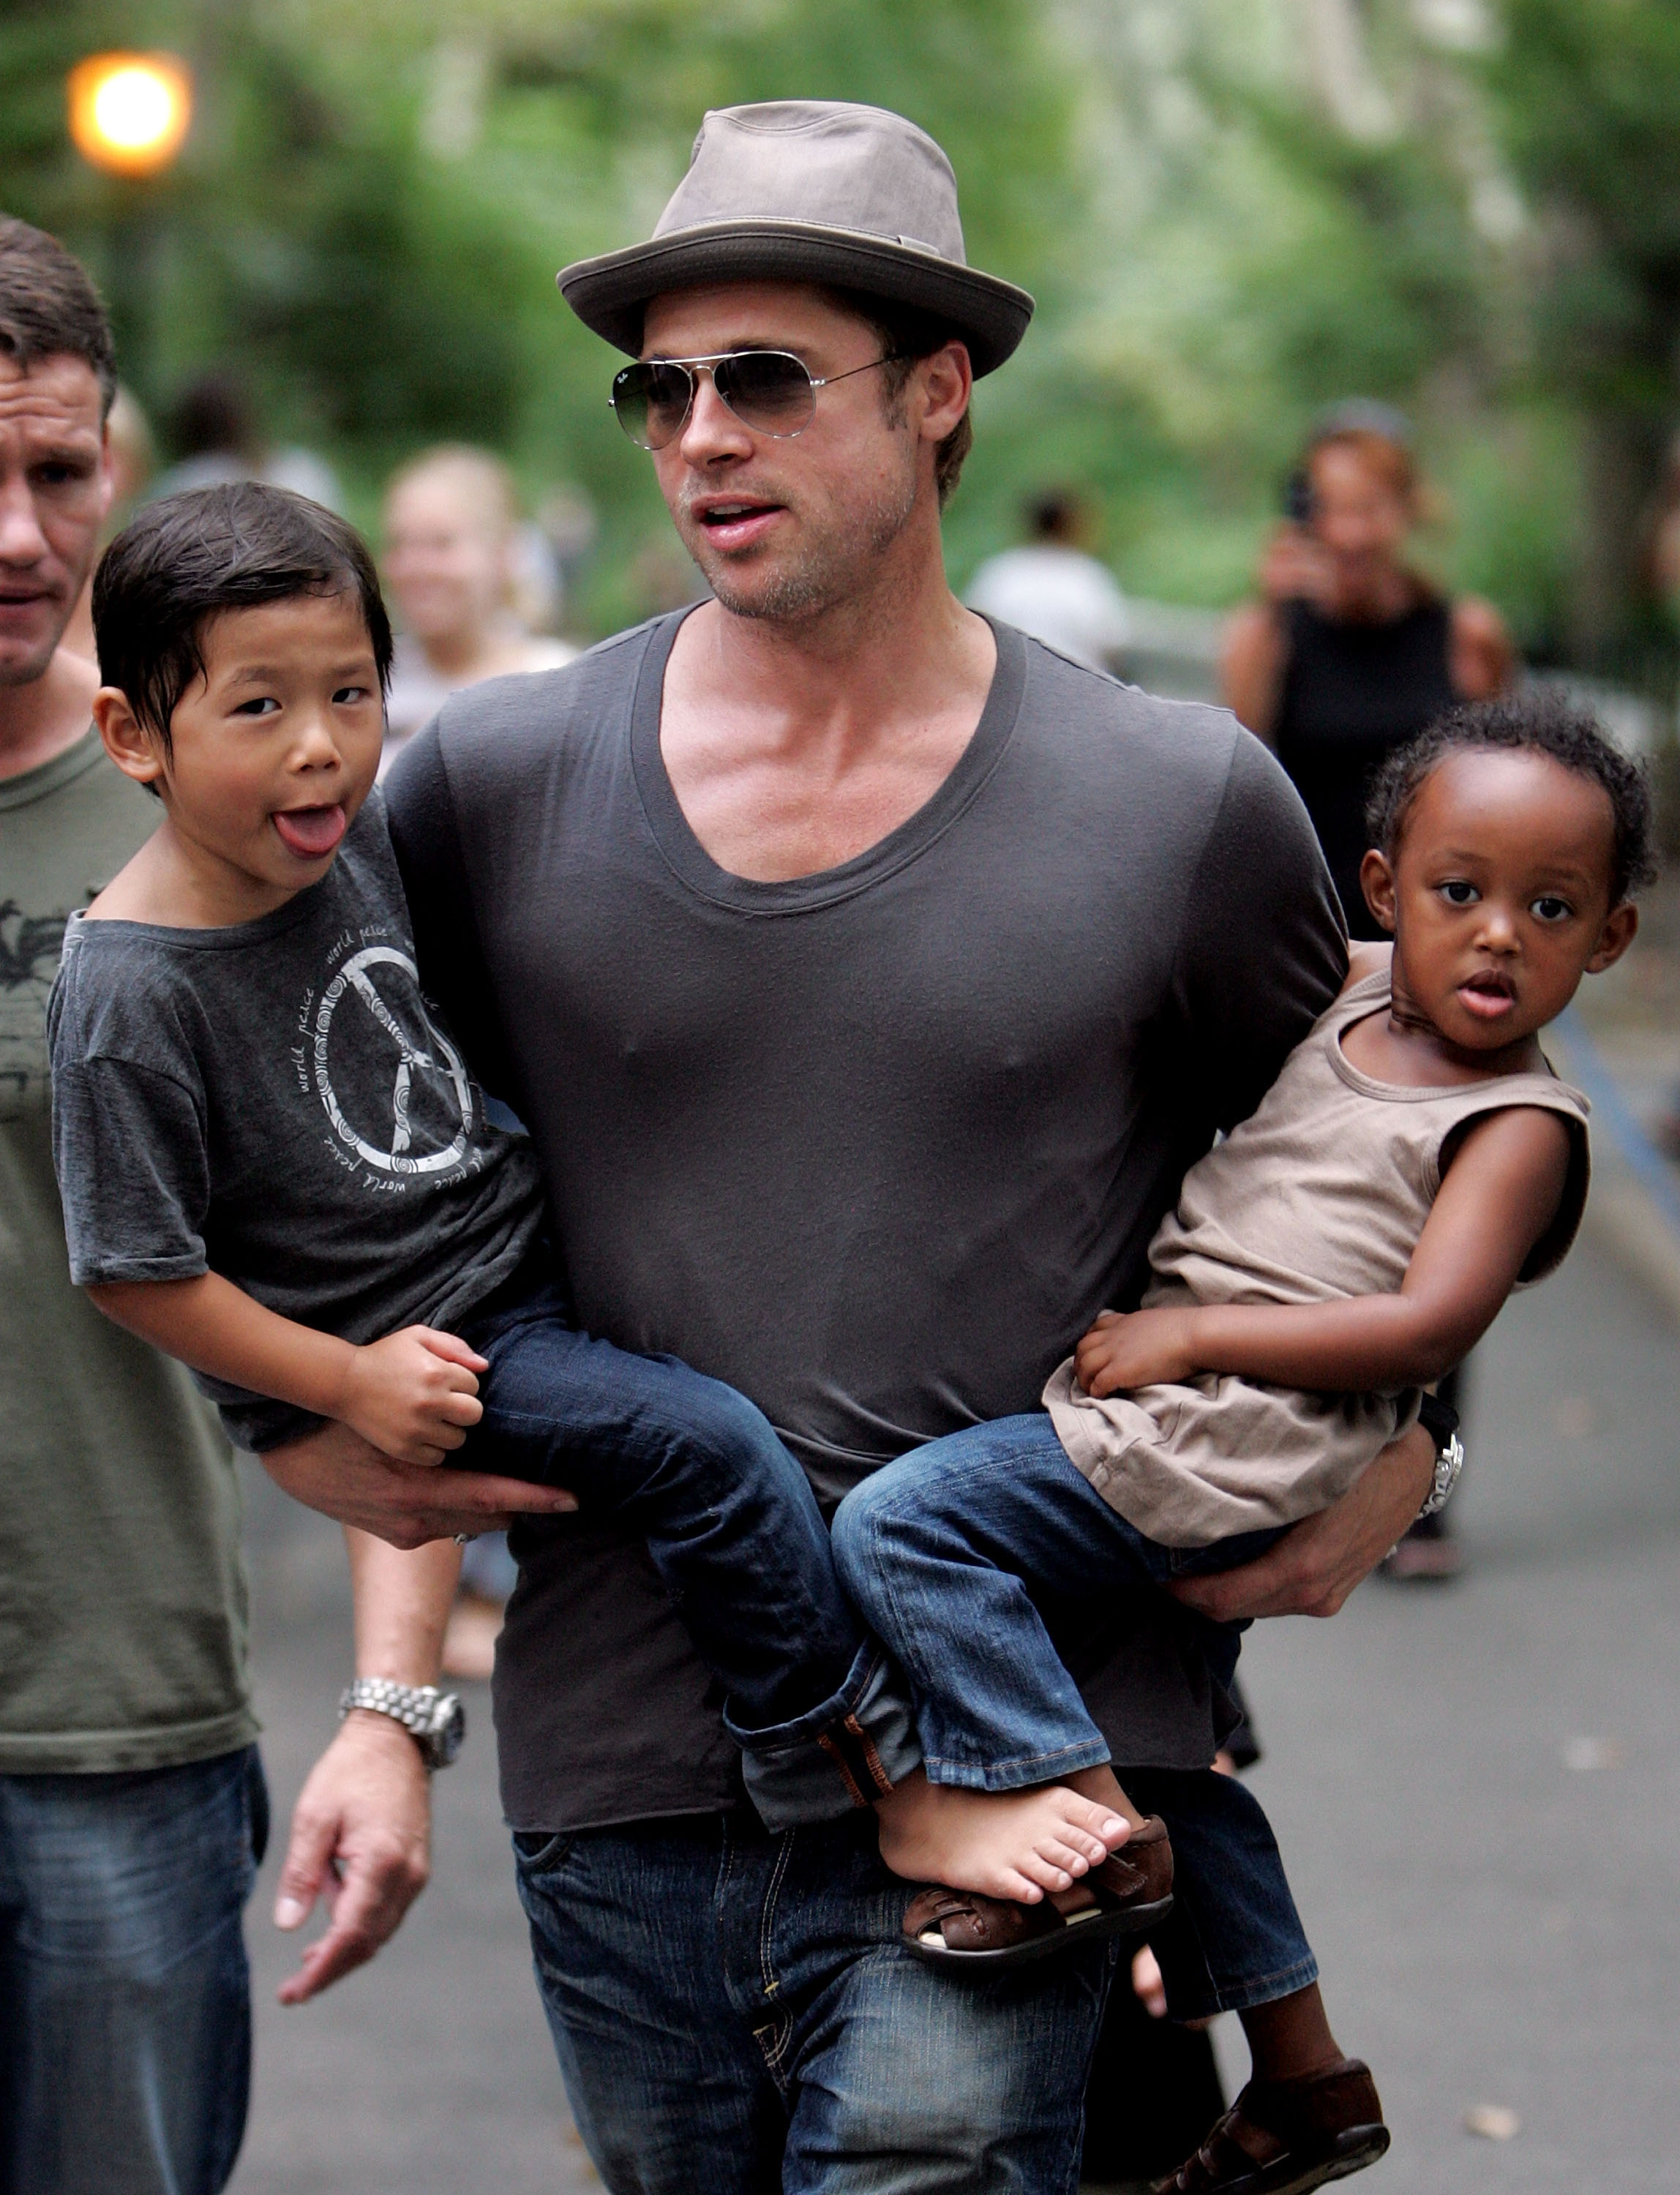 Brad Pitt visitant une aire de jeux avec ses enfants Zahara Jolie-Pitt, Pax Jolie-Pitt et Maddox Jolie-Pitt à New York City le 26 août 2007 | Source : Getty Images